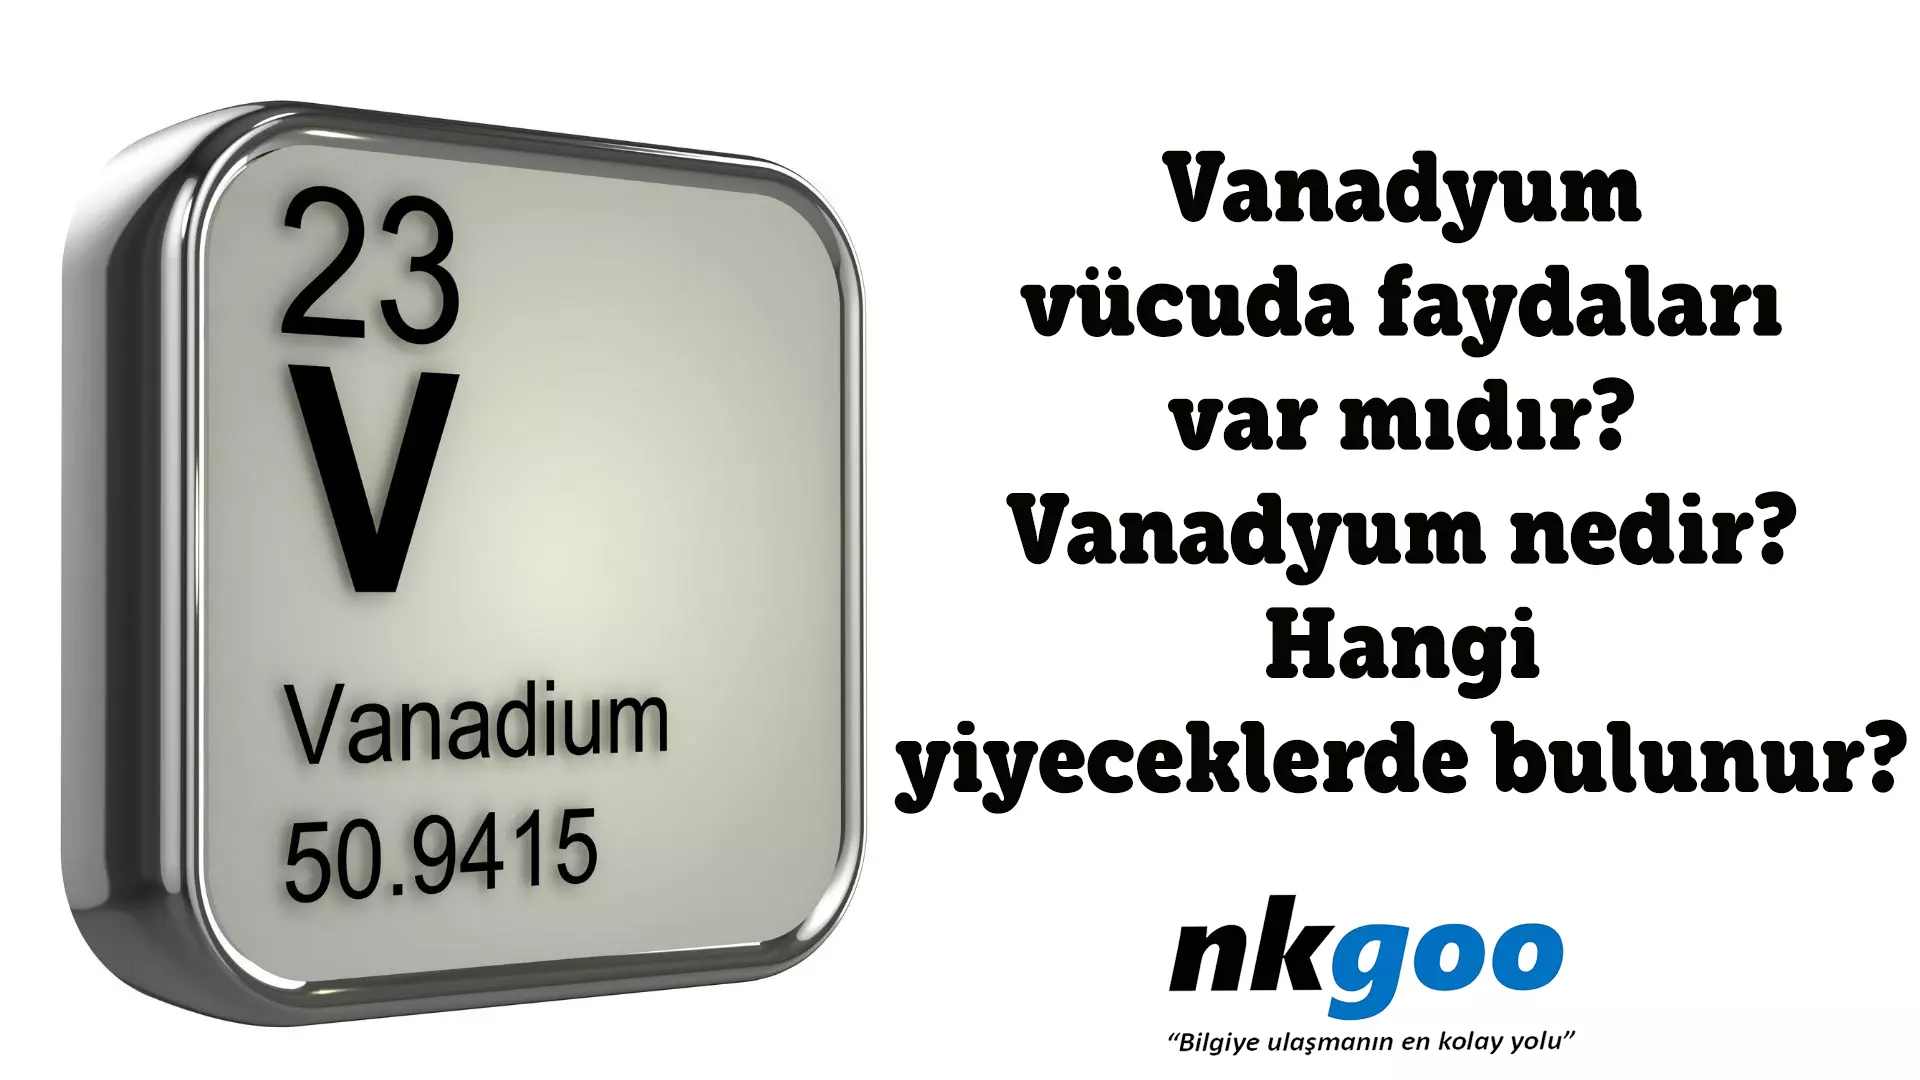 Vanadyum vücuda faydaları var mıdır?